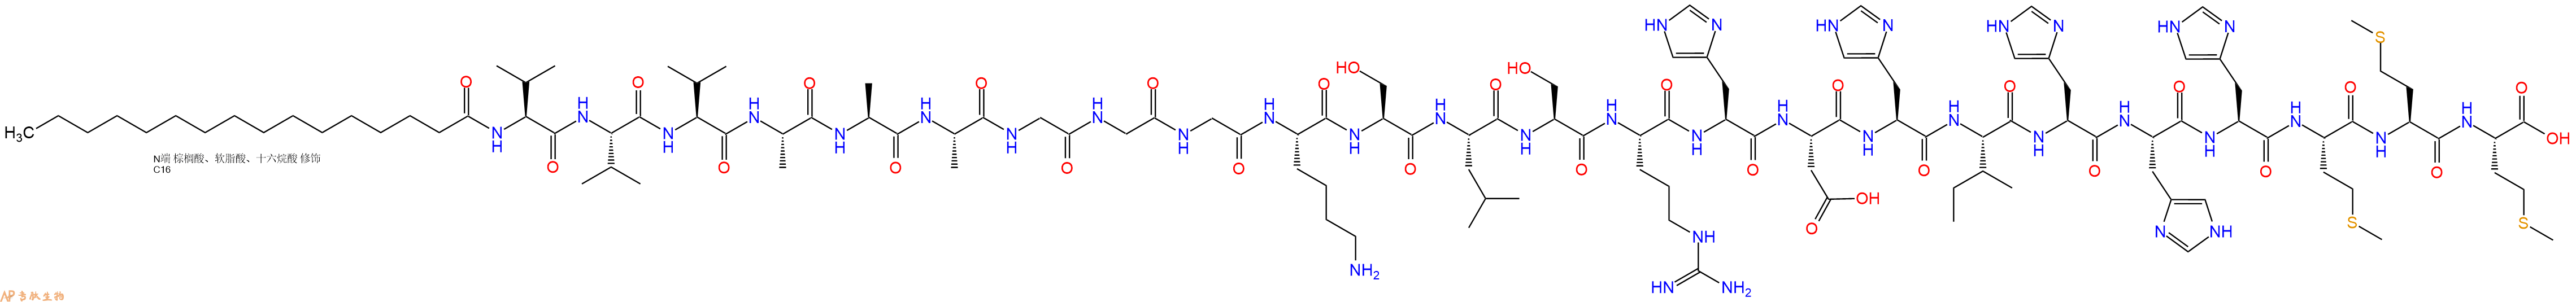 专肽生物产品棕榈酸-VVVAAAGGGKSLSRHDHIHHHMMM